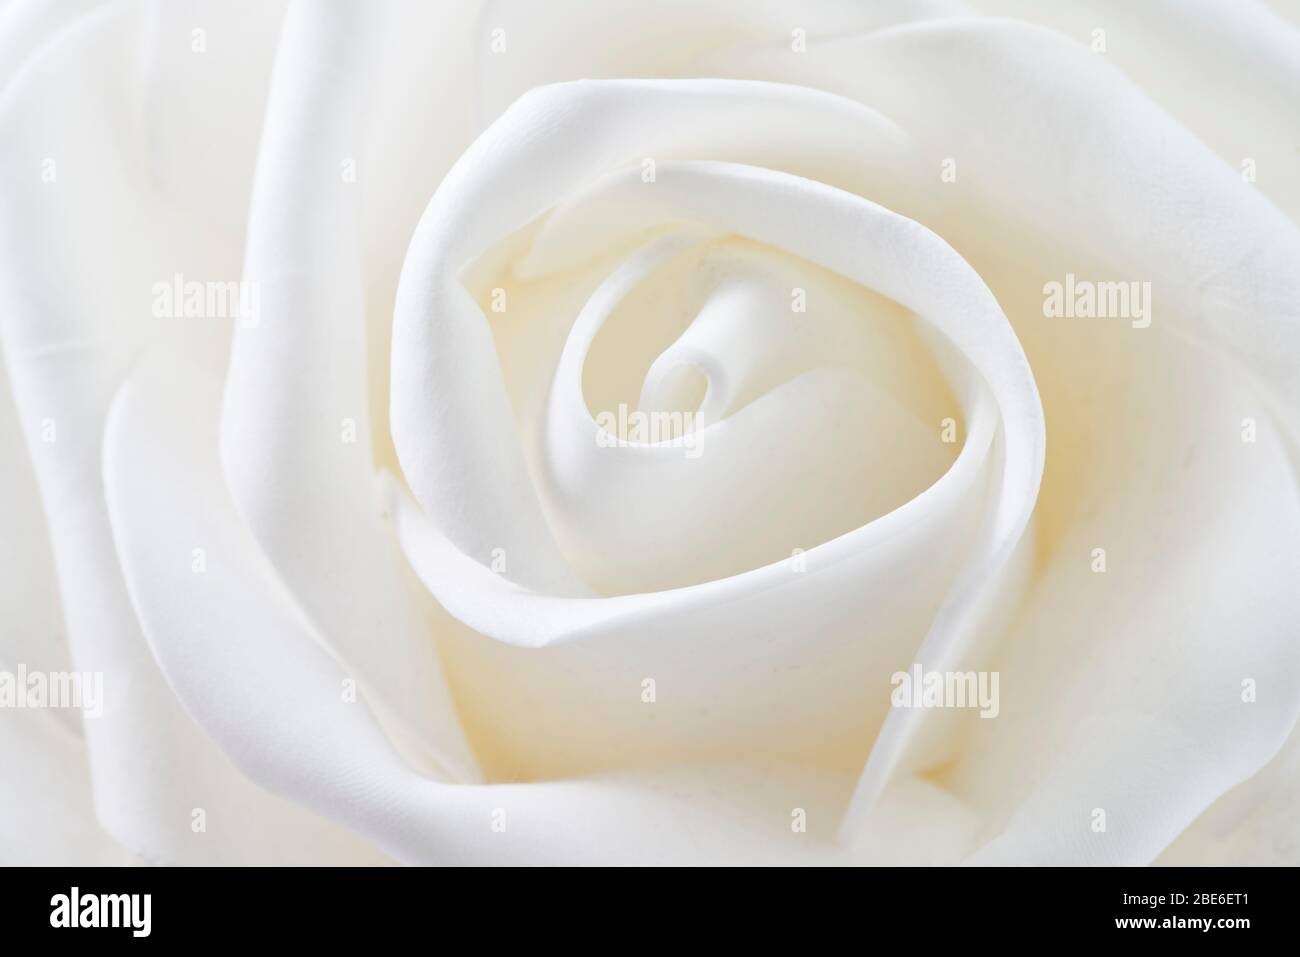 white flower shaped wavy shapes Stock Photo